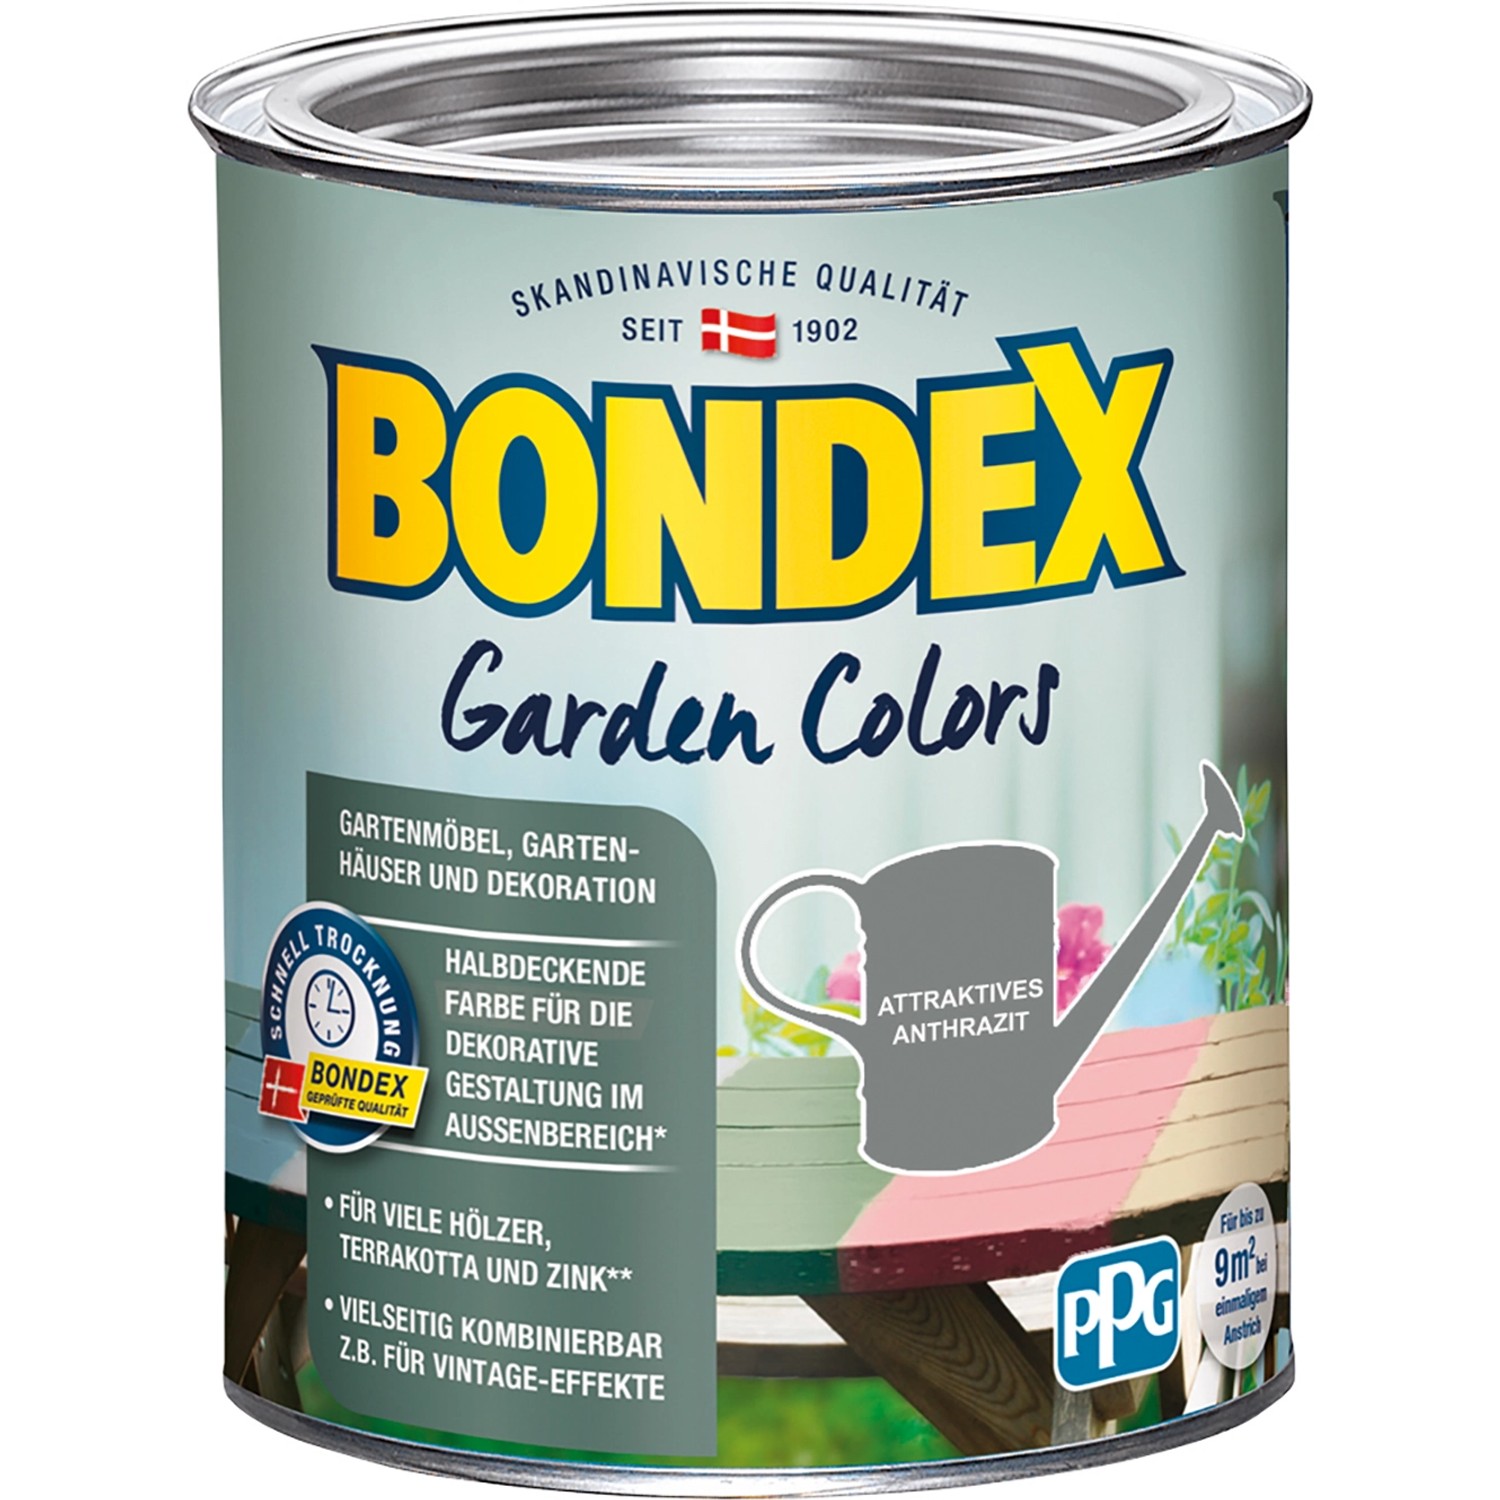 Bondex Garden Colors Attraktives Anthrazit 750 ml von Bondex